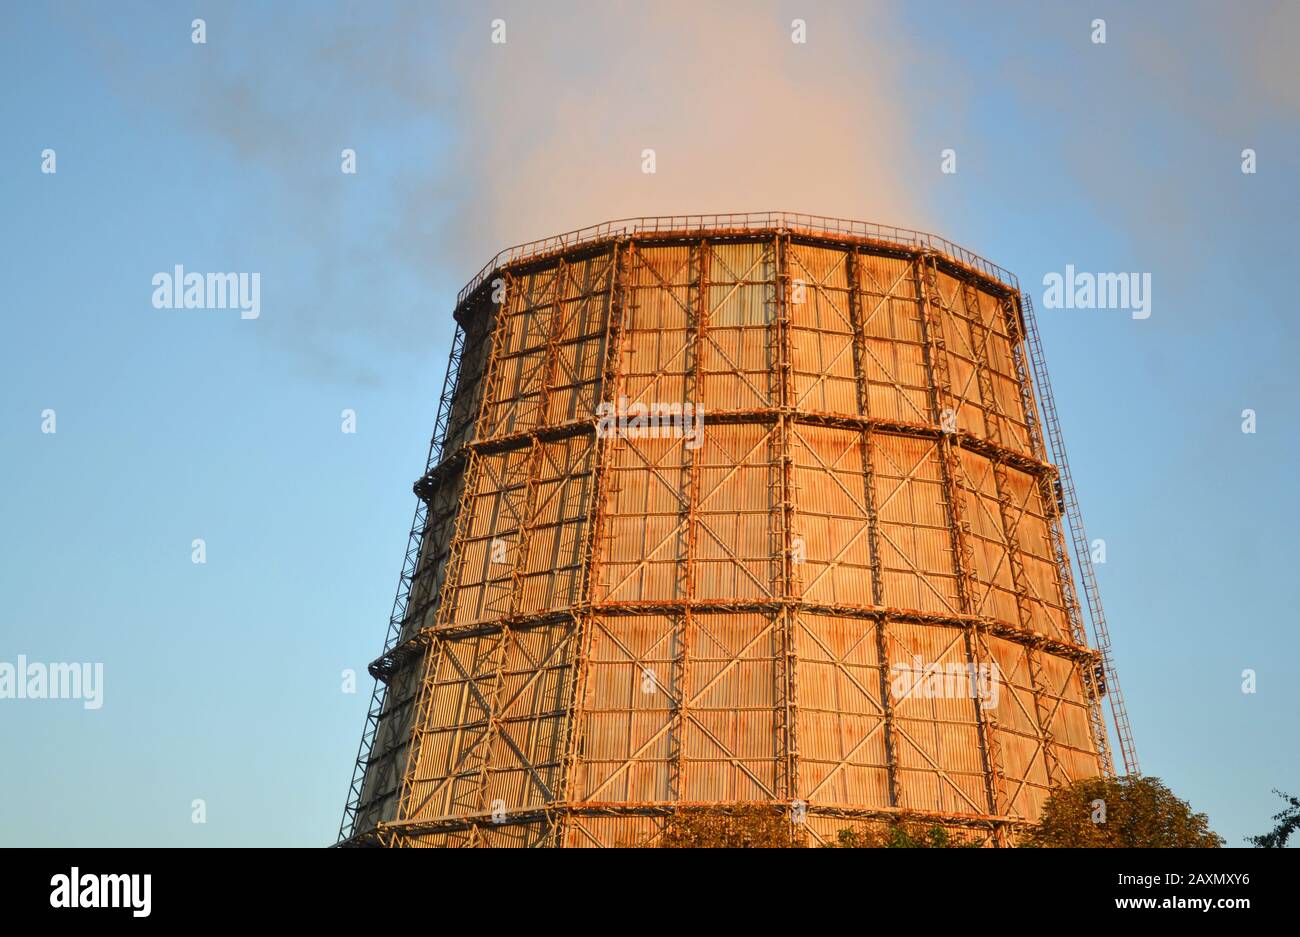 Großer Kamin des Wärmekraftwerks bei Sonnenuntergang bei Sonnenaufgang mit hellblauem Himmel mit dem Rauch aus dem Kamin Stockfoto